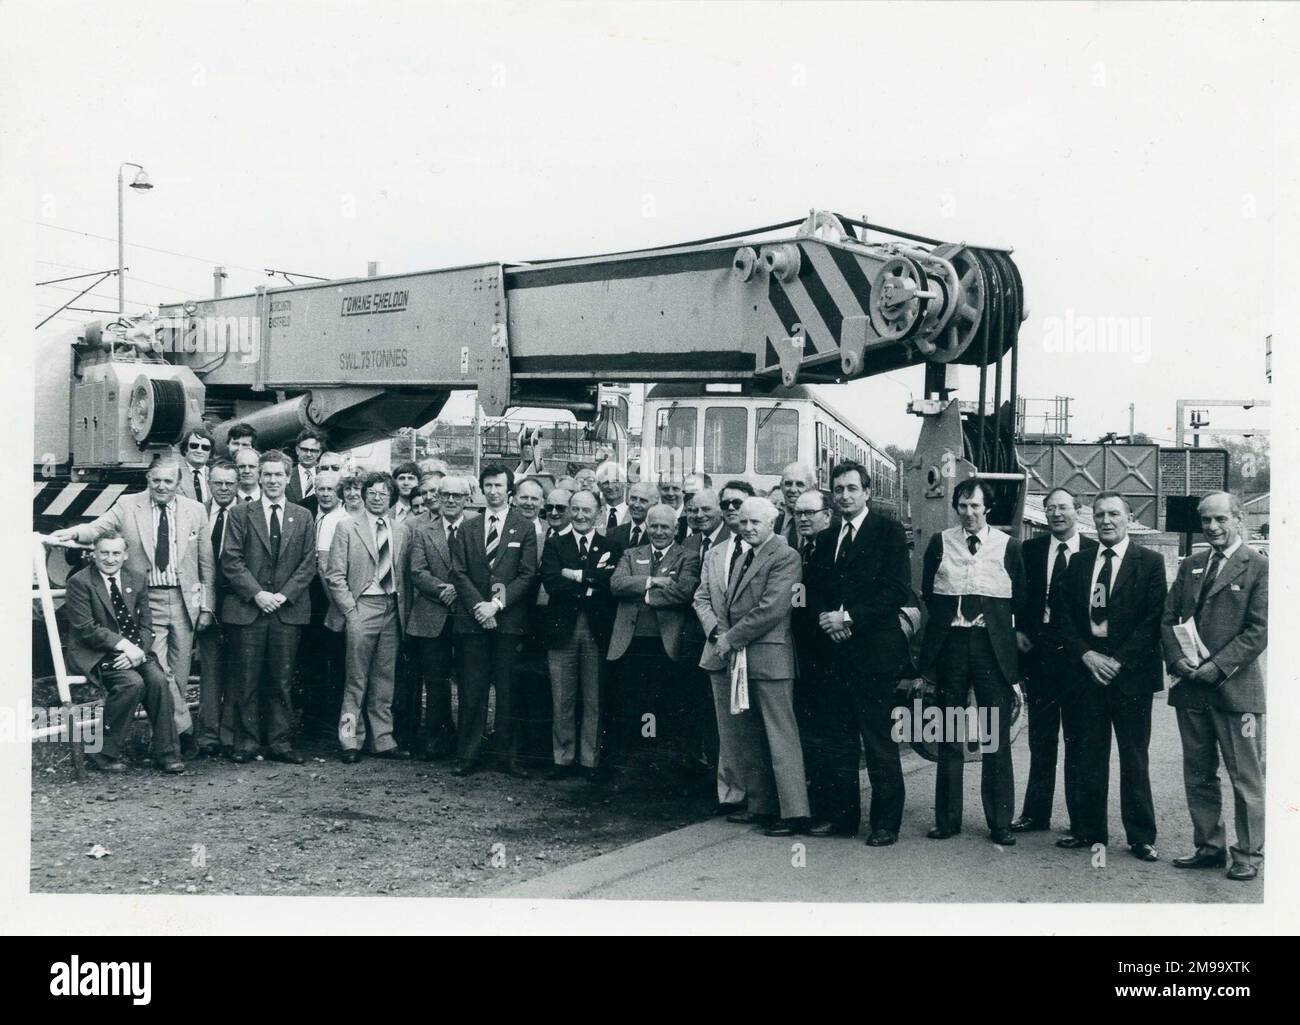 Gruppenporträt von Mitgliedern der Railway Division im British Rail Kingmore Depot, Carlisle. Cowans Sheldon 75 Tonnen Eisenbahnkrane im Hintergrund. Stockfoto